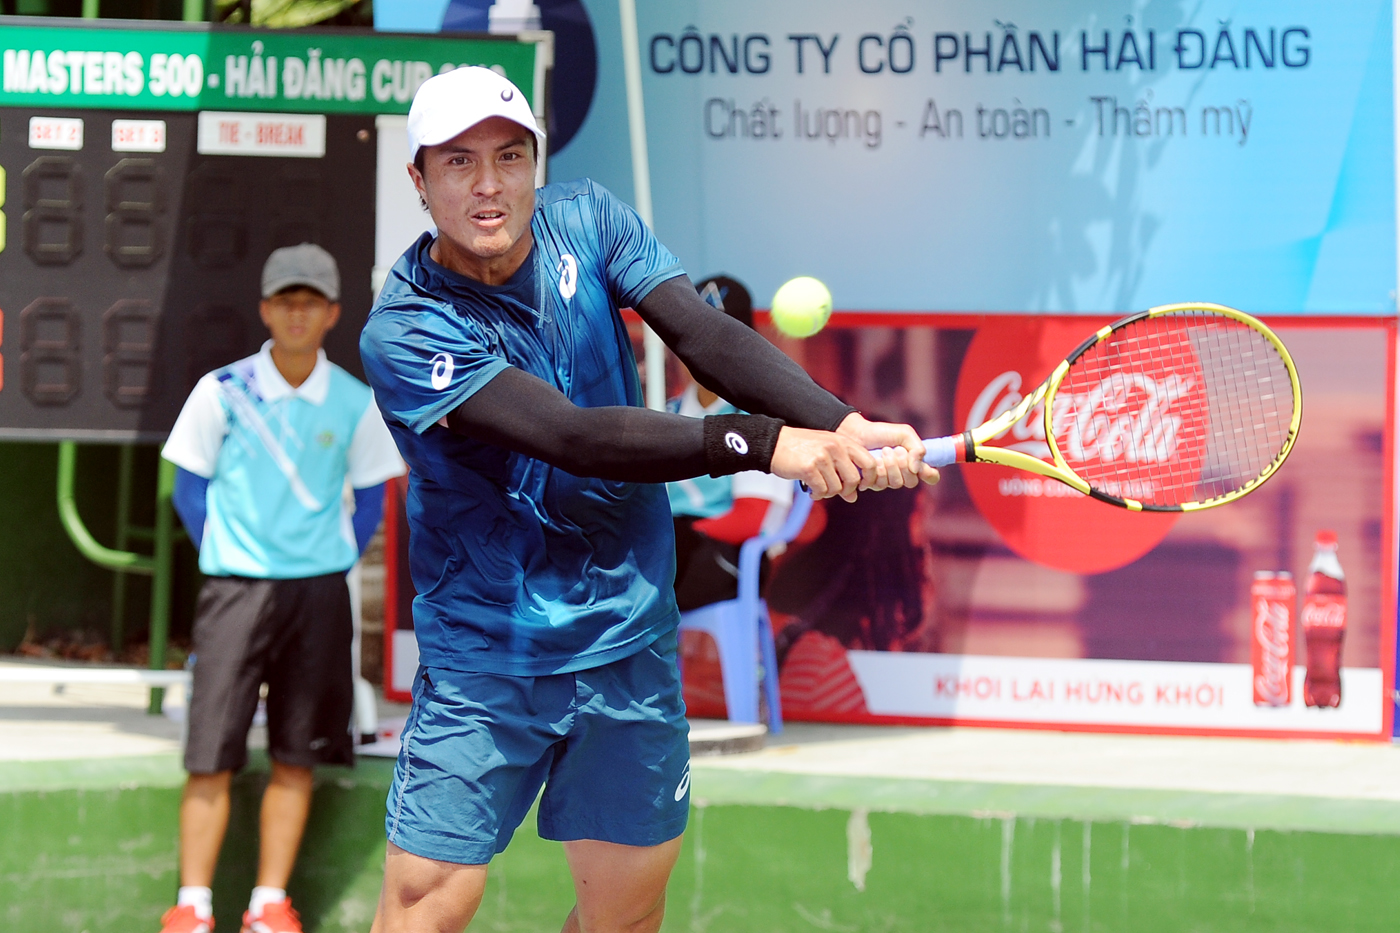 Daniel Nguyễn hoàn tất cú đúp vô địch giải tennis VTF Masters 500